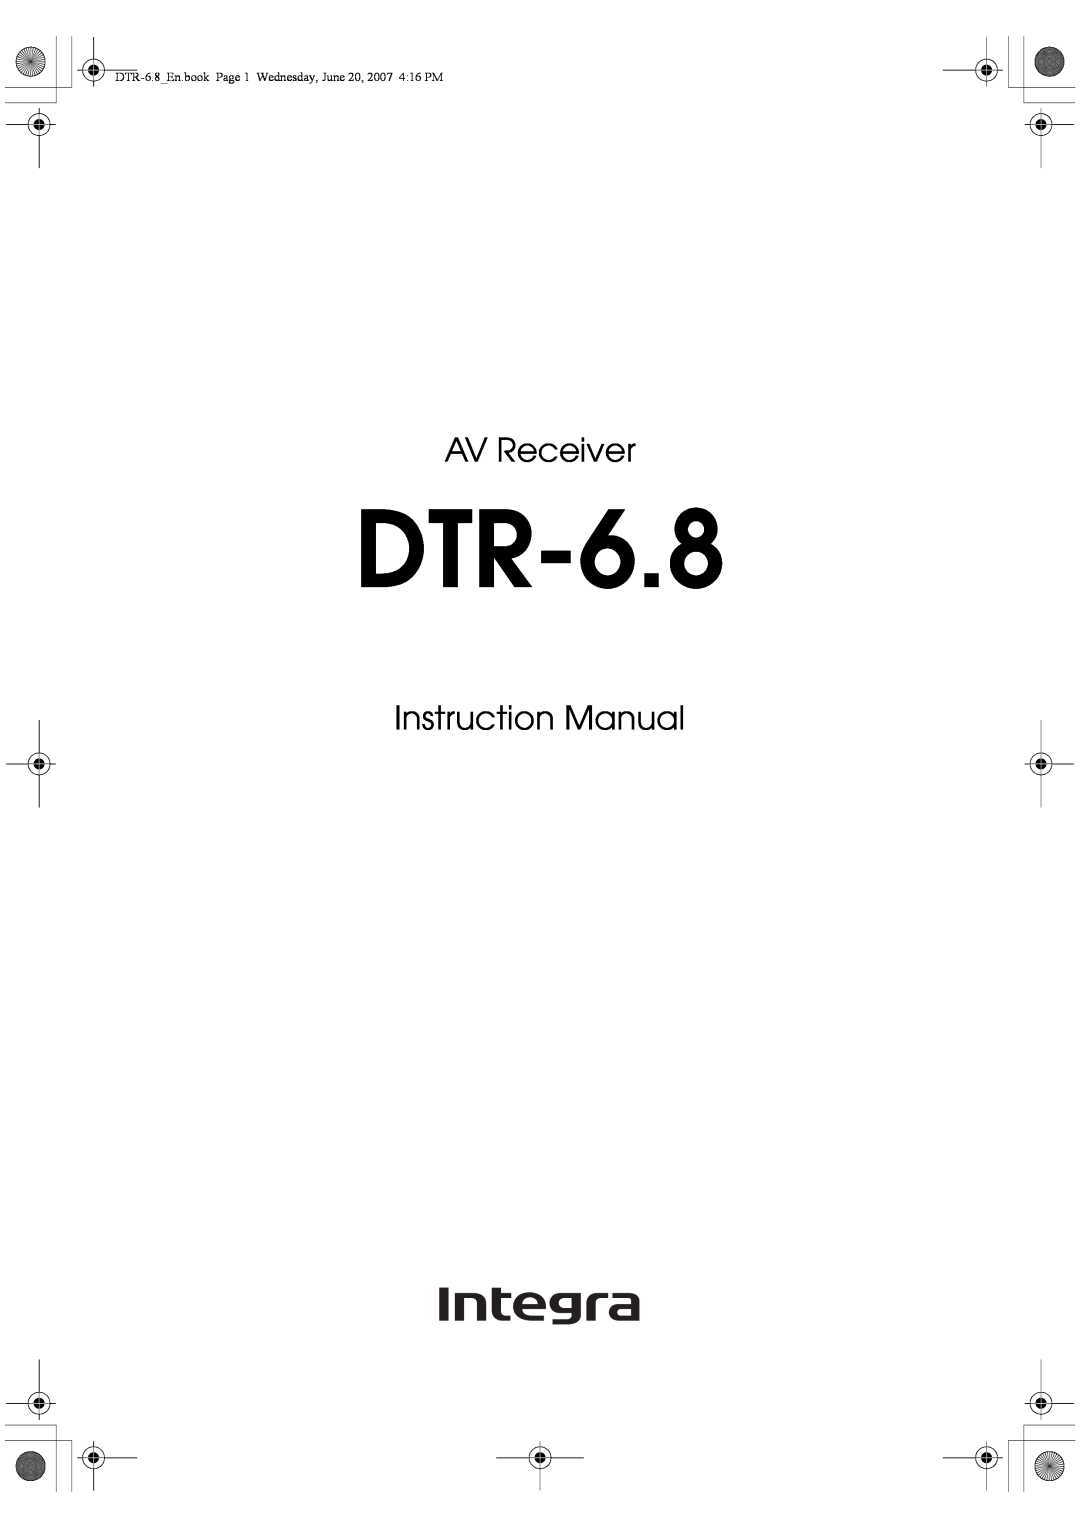 Integra DTR-6.8 instruction manual AV Receiver 